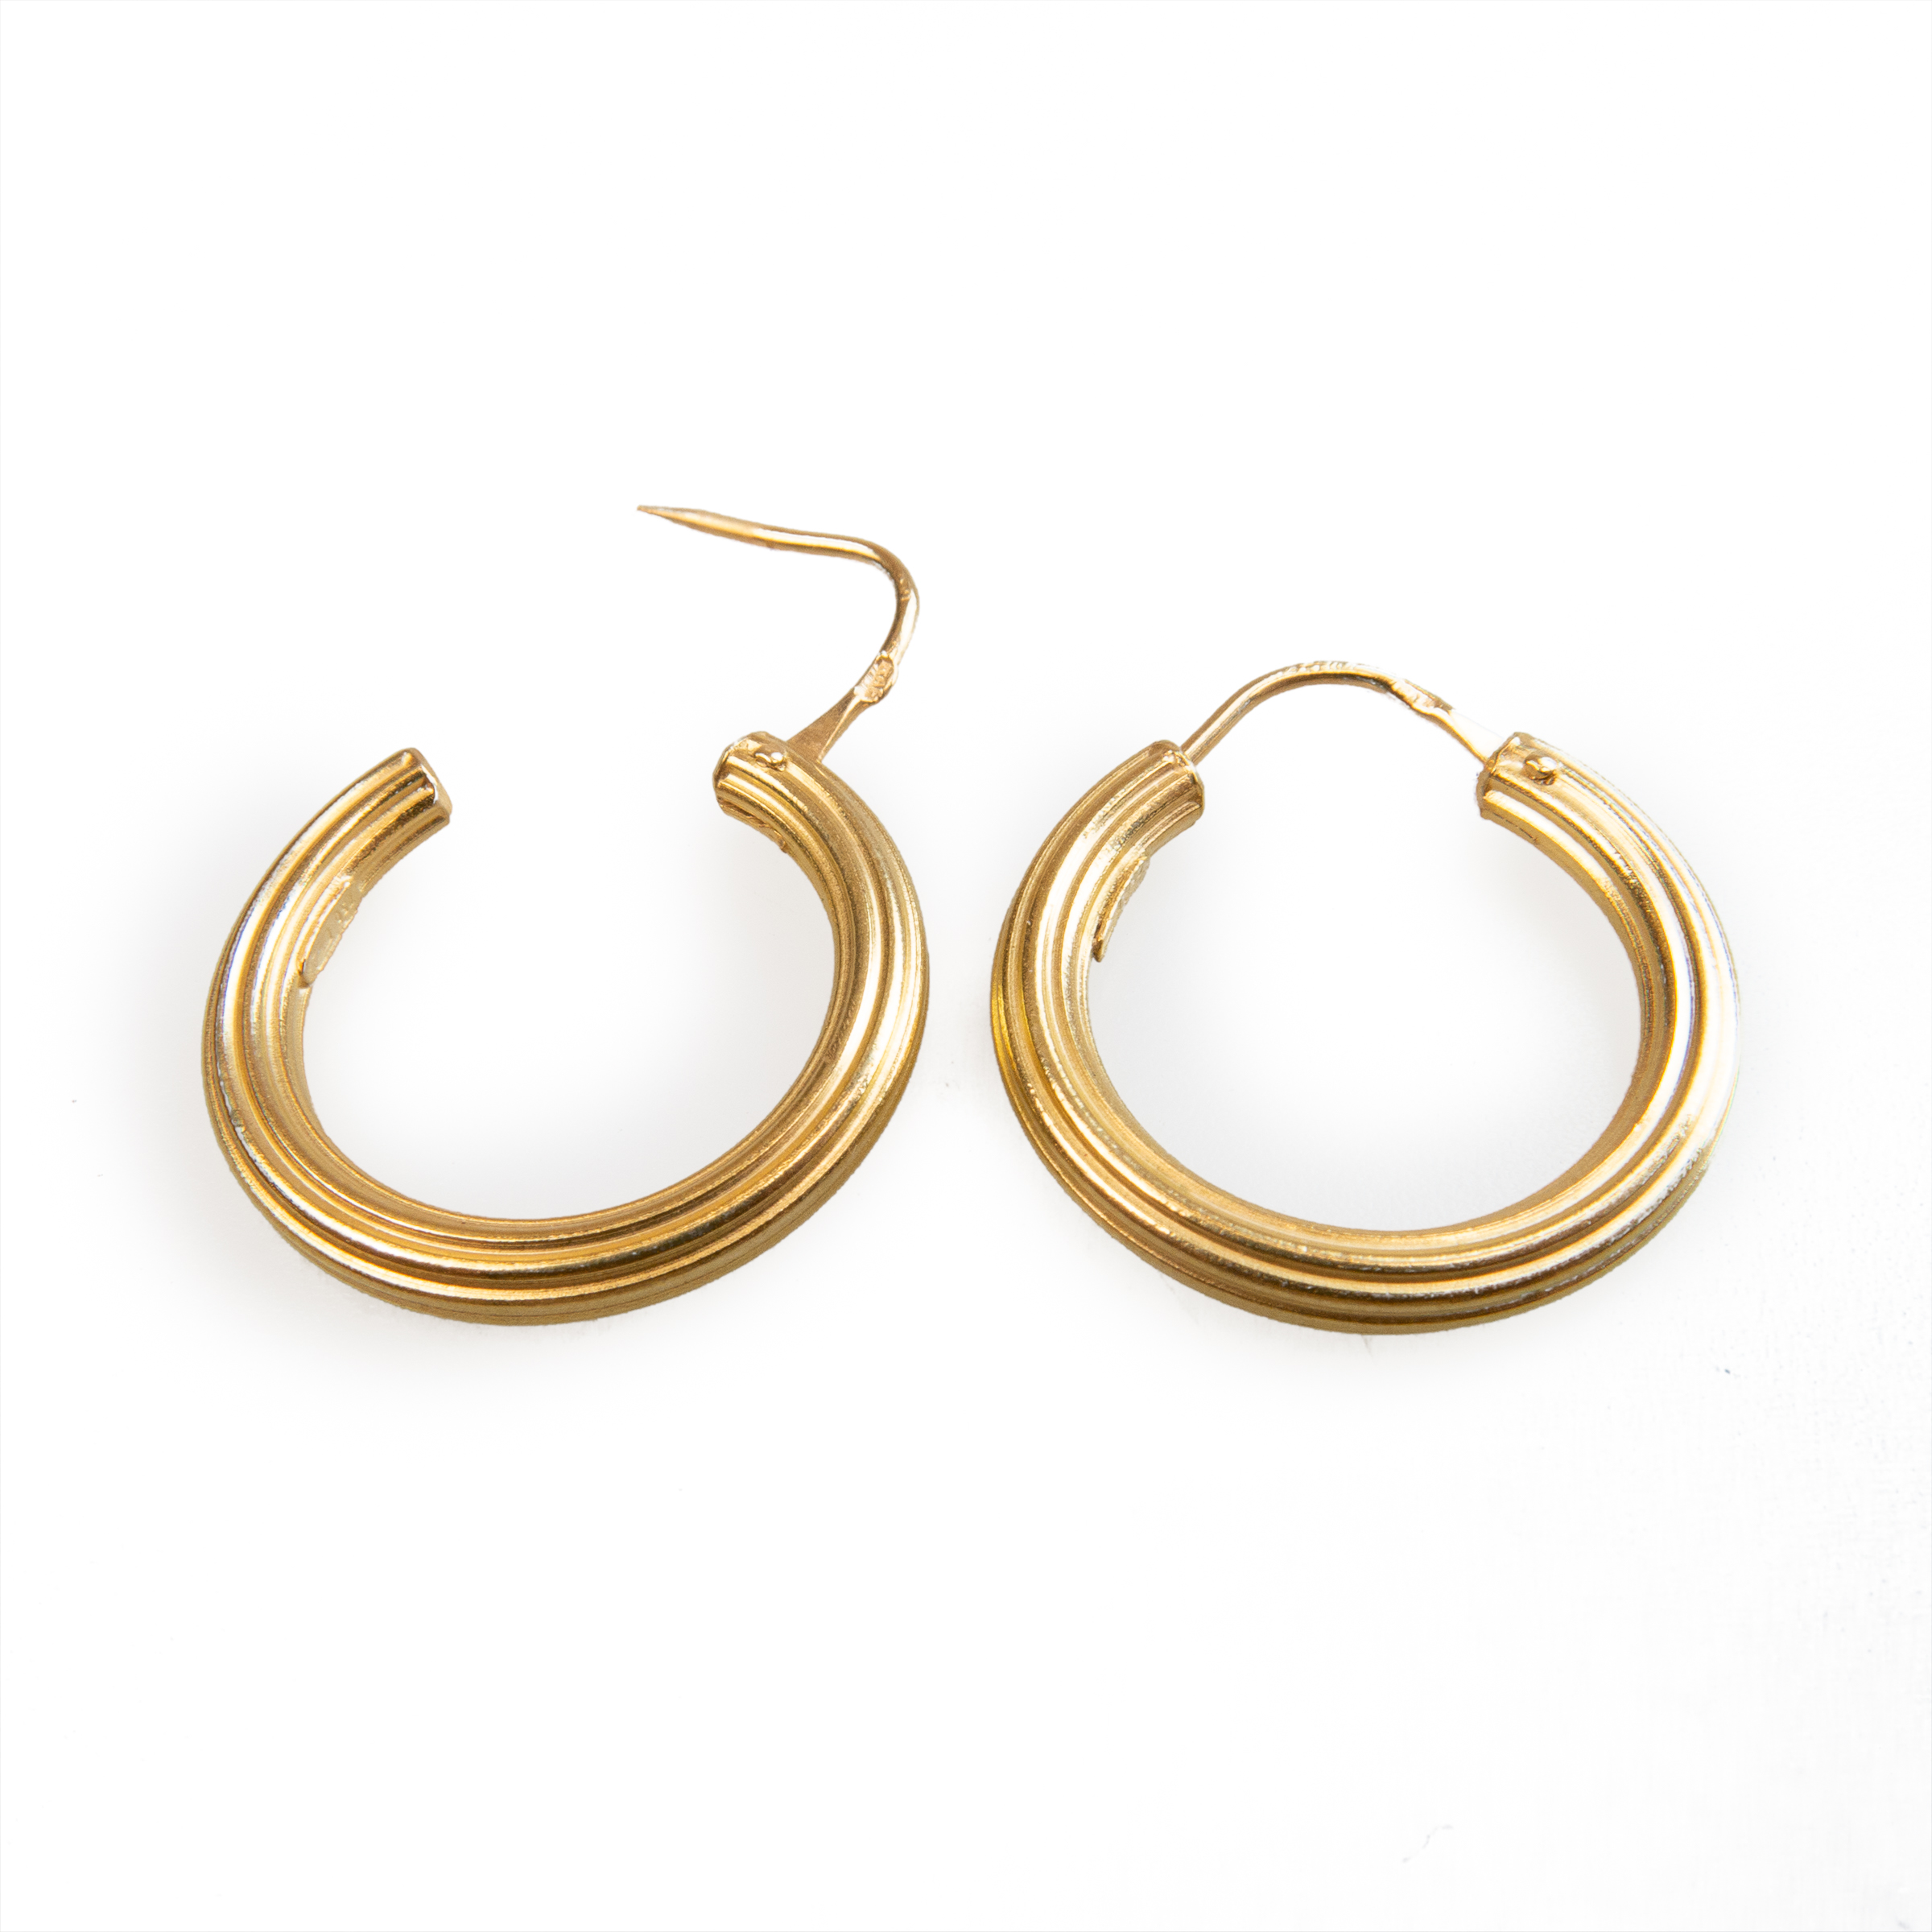 13 x Pairs Of 18k Yellow Gold Hoop Earrings